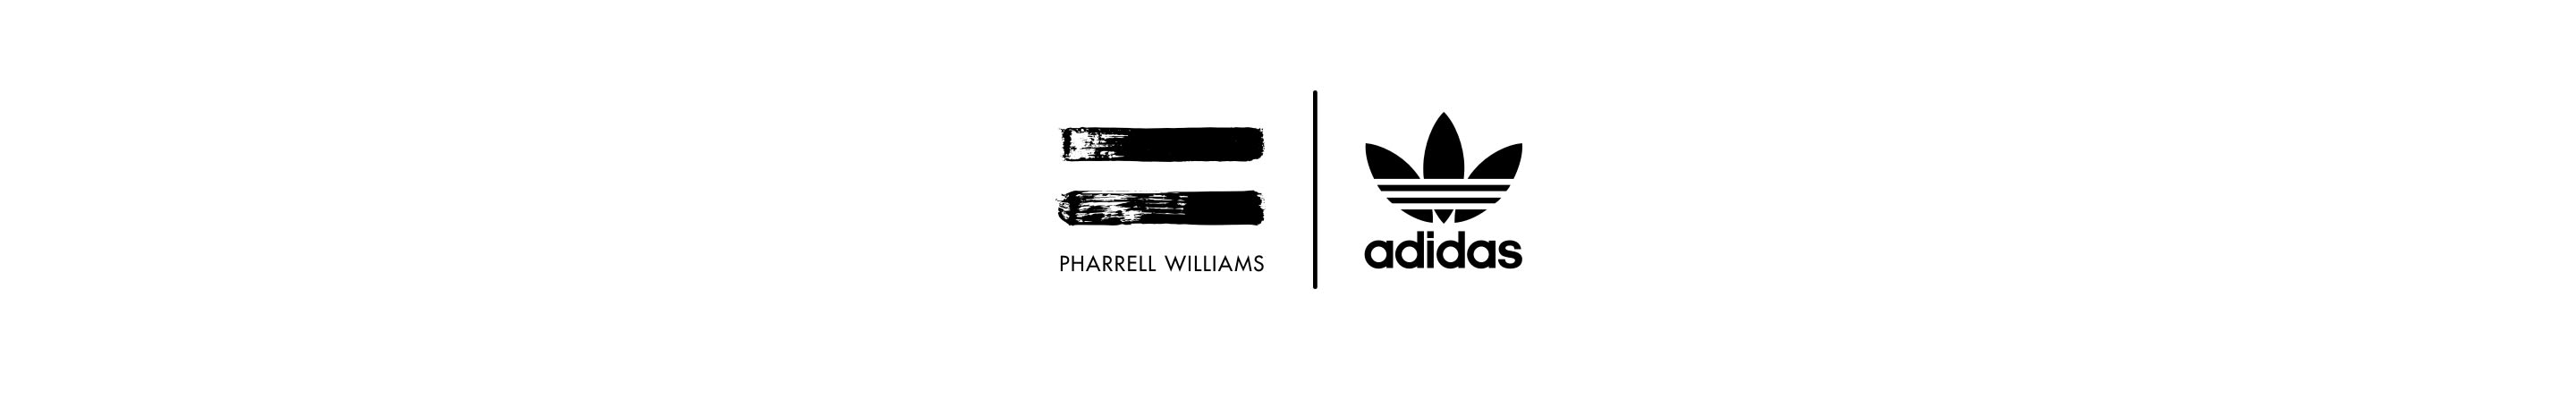 adidas pharrell williams white price